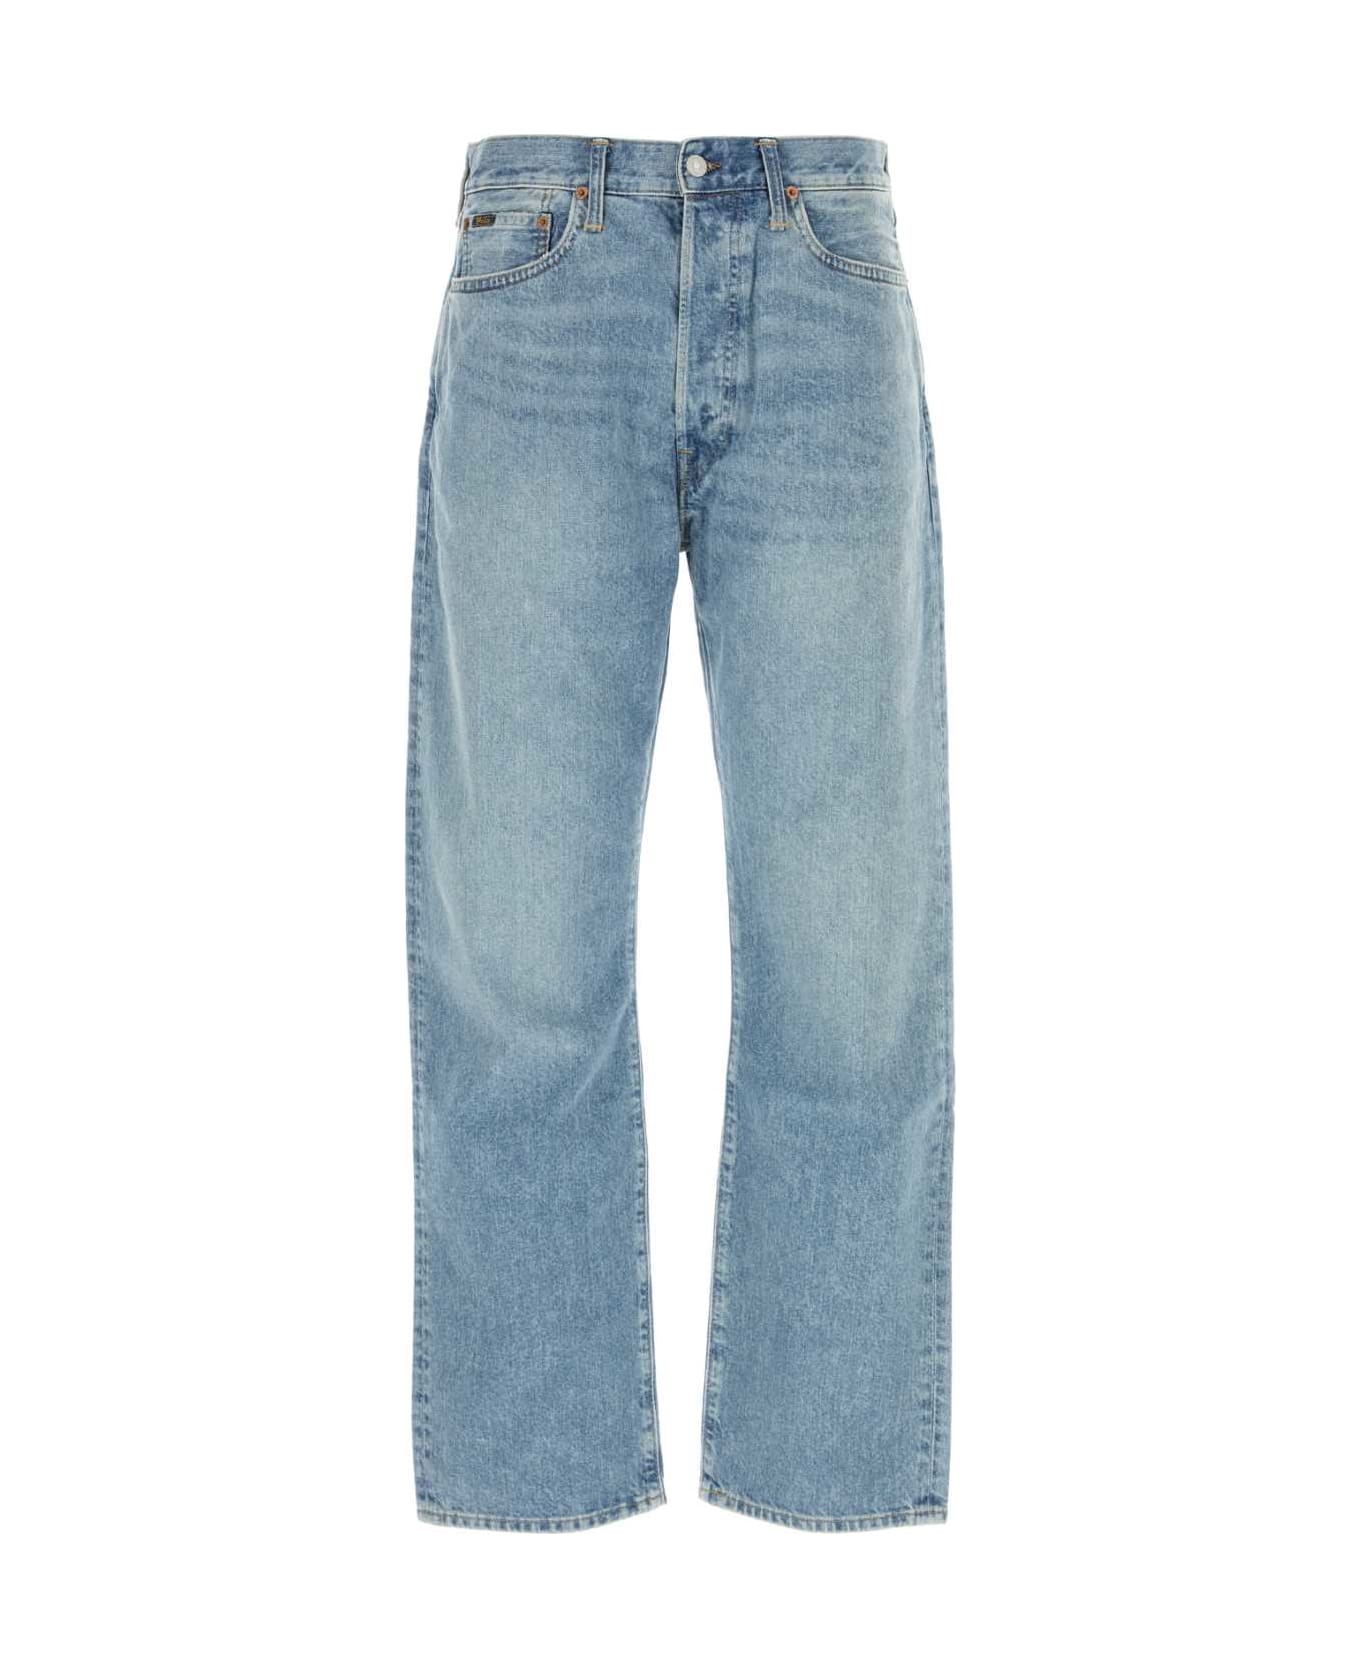 Polo Ralph Lauren Denim Jeans - LIGHTBLUE